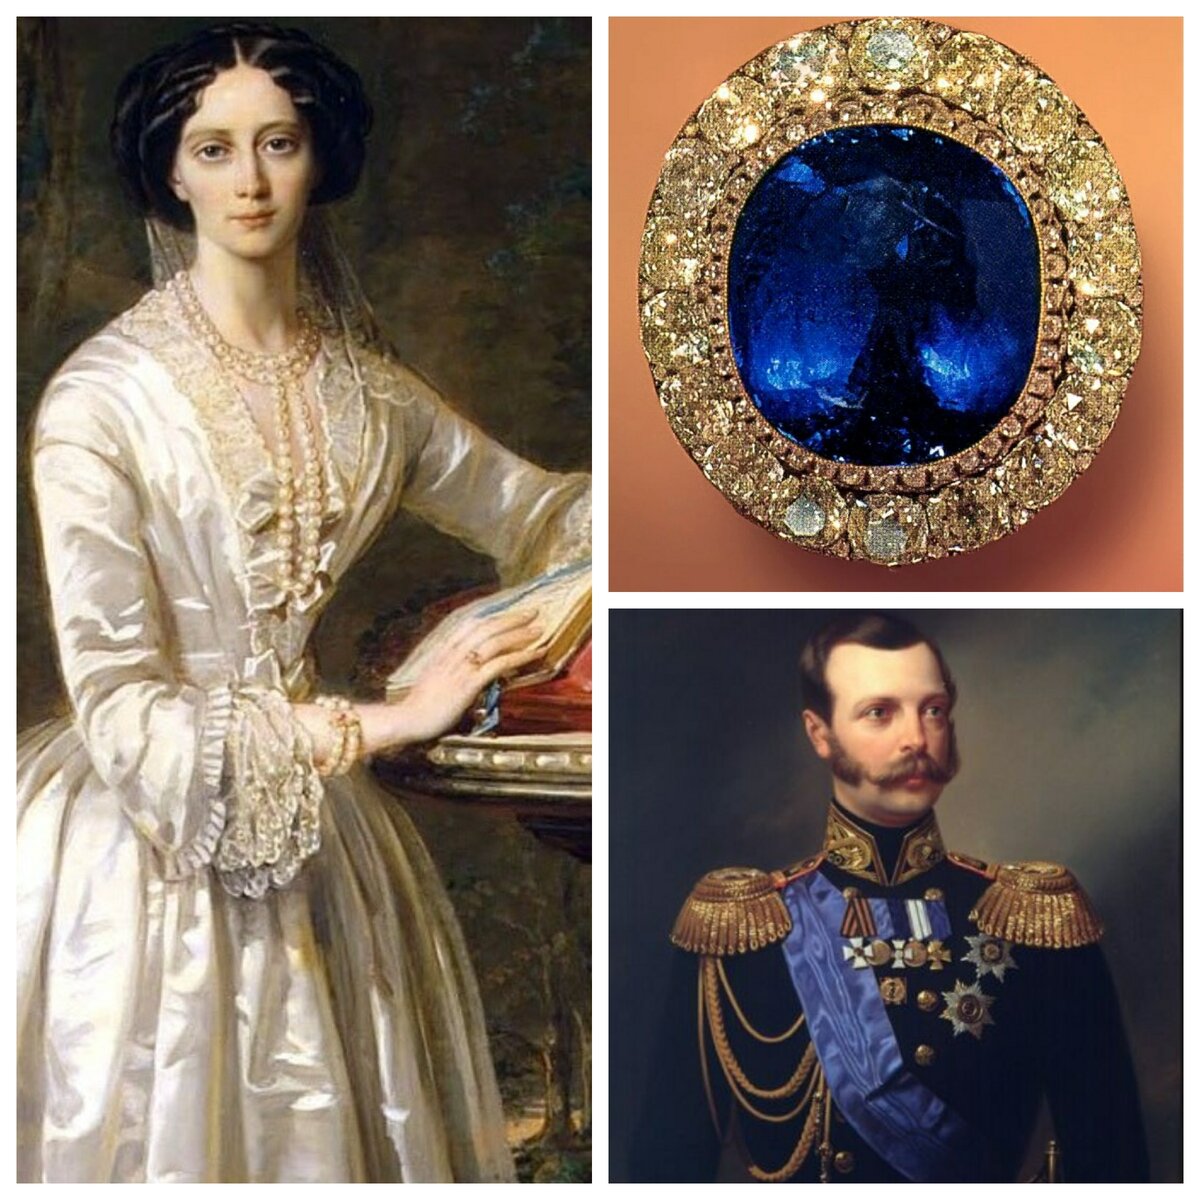 В собрании Алмазного фонда хранятся редчайшие камни и драгоценности, ранее принадлежавшие российской императорской семье.